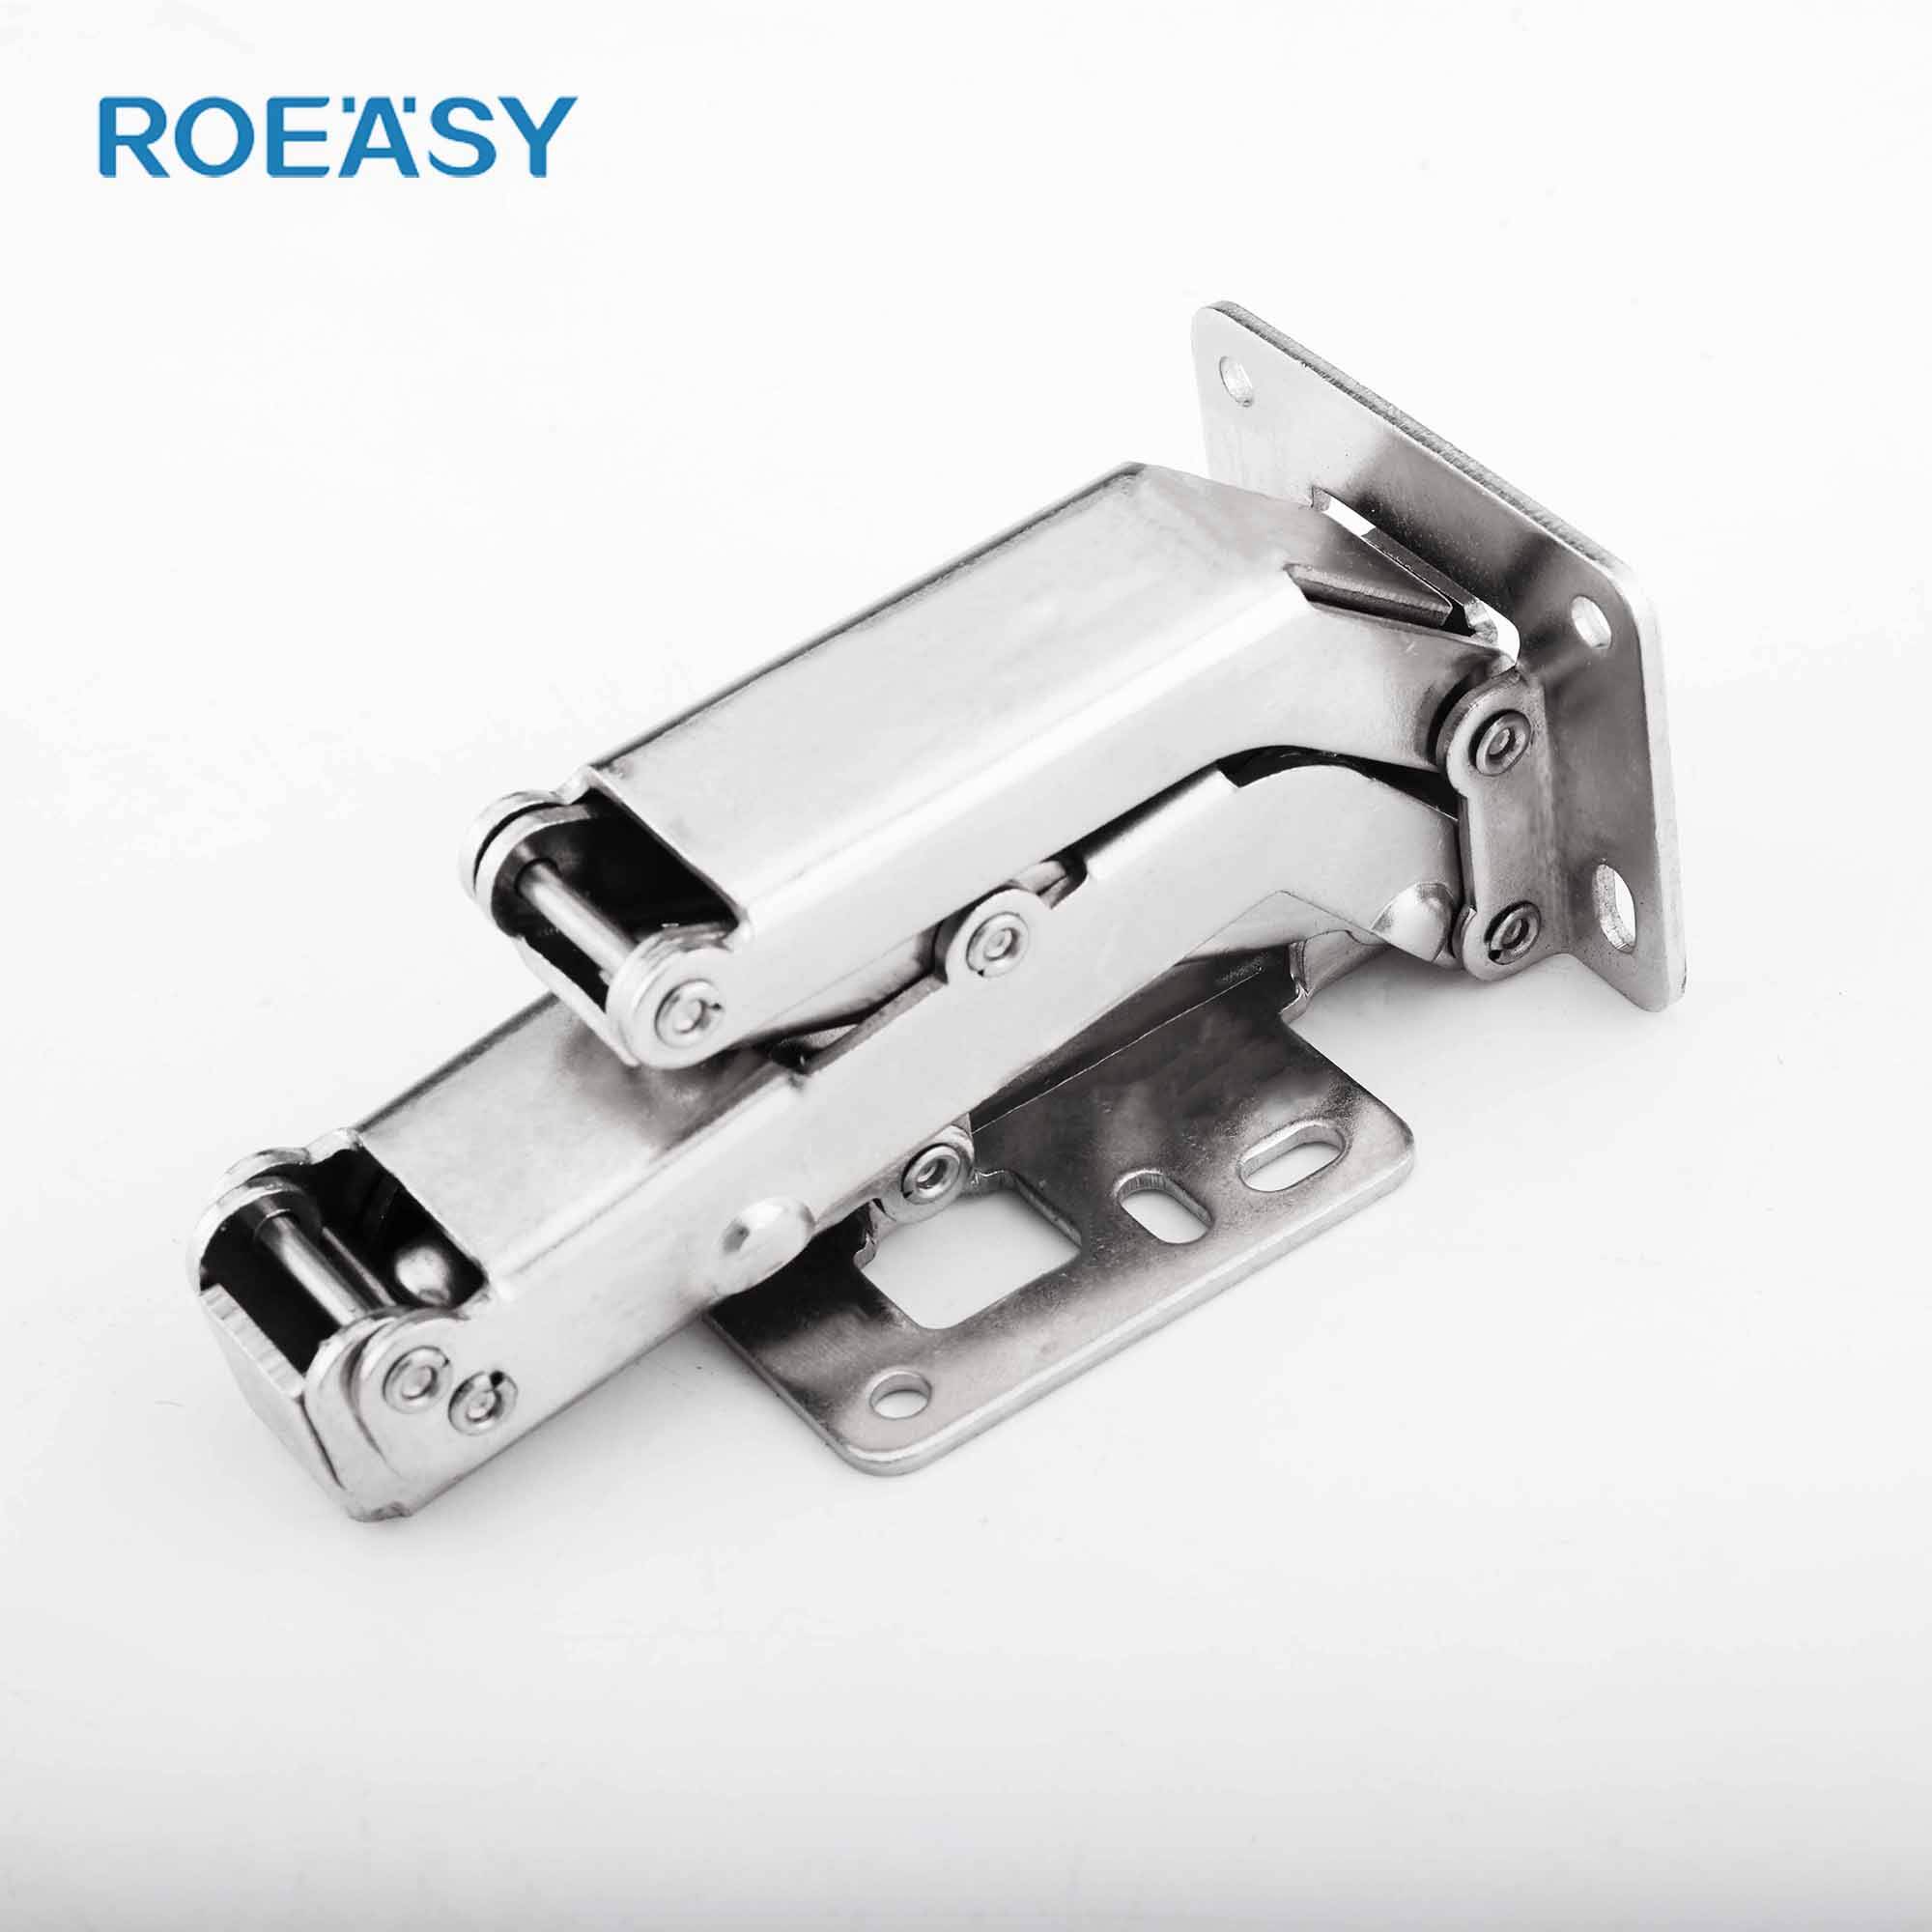 Roeasy FH-001 مفصل عادي لباب الخزانة غير قابل للفصل بزاوية 165 درجة